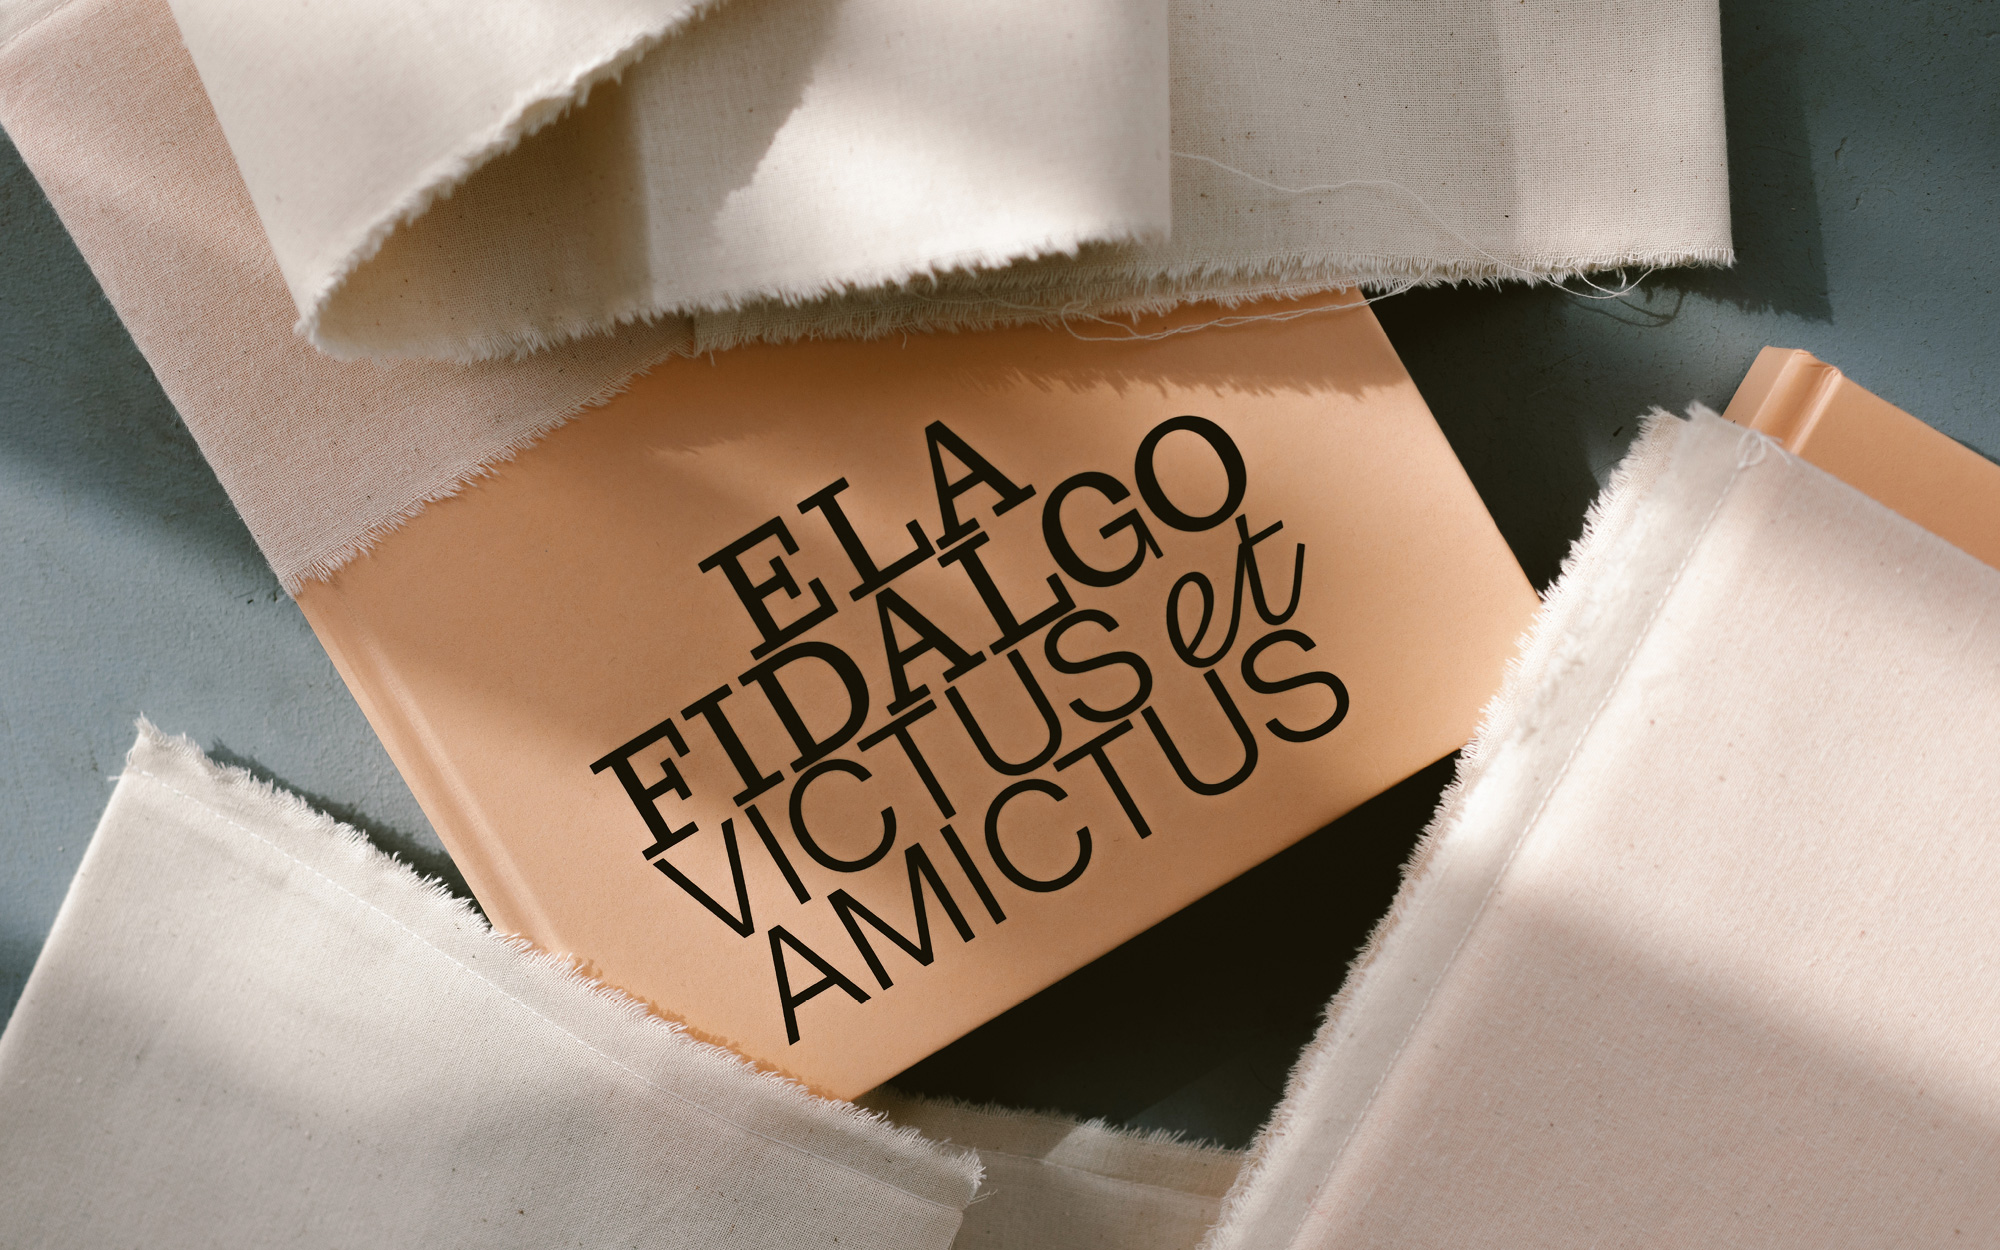 Editorial Design for Ela Fidalgo’s Exhibition “Victus et Amictus”